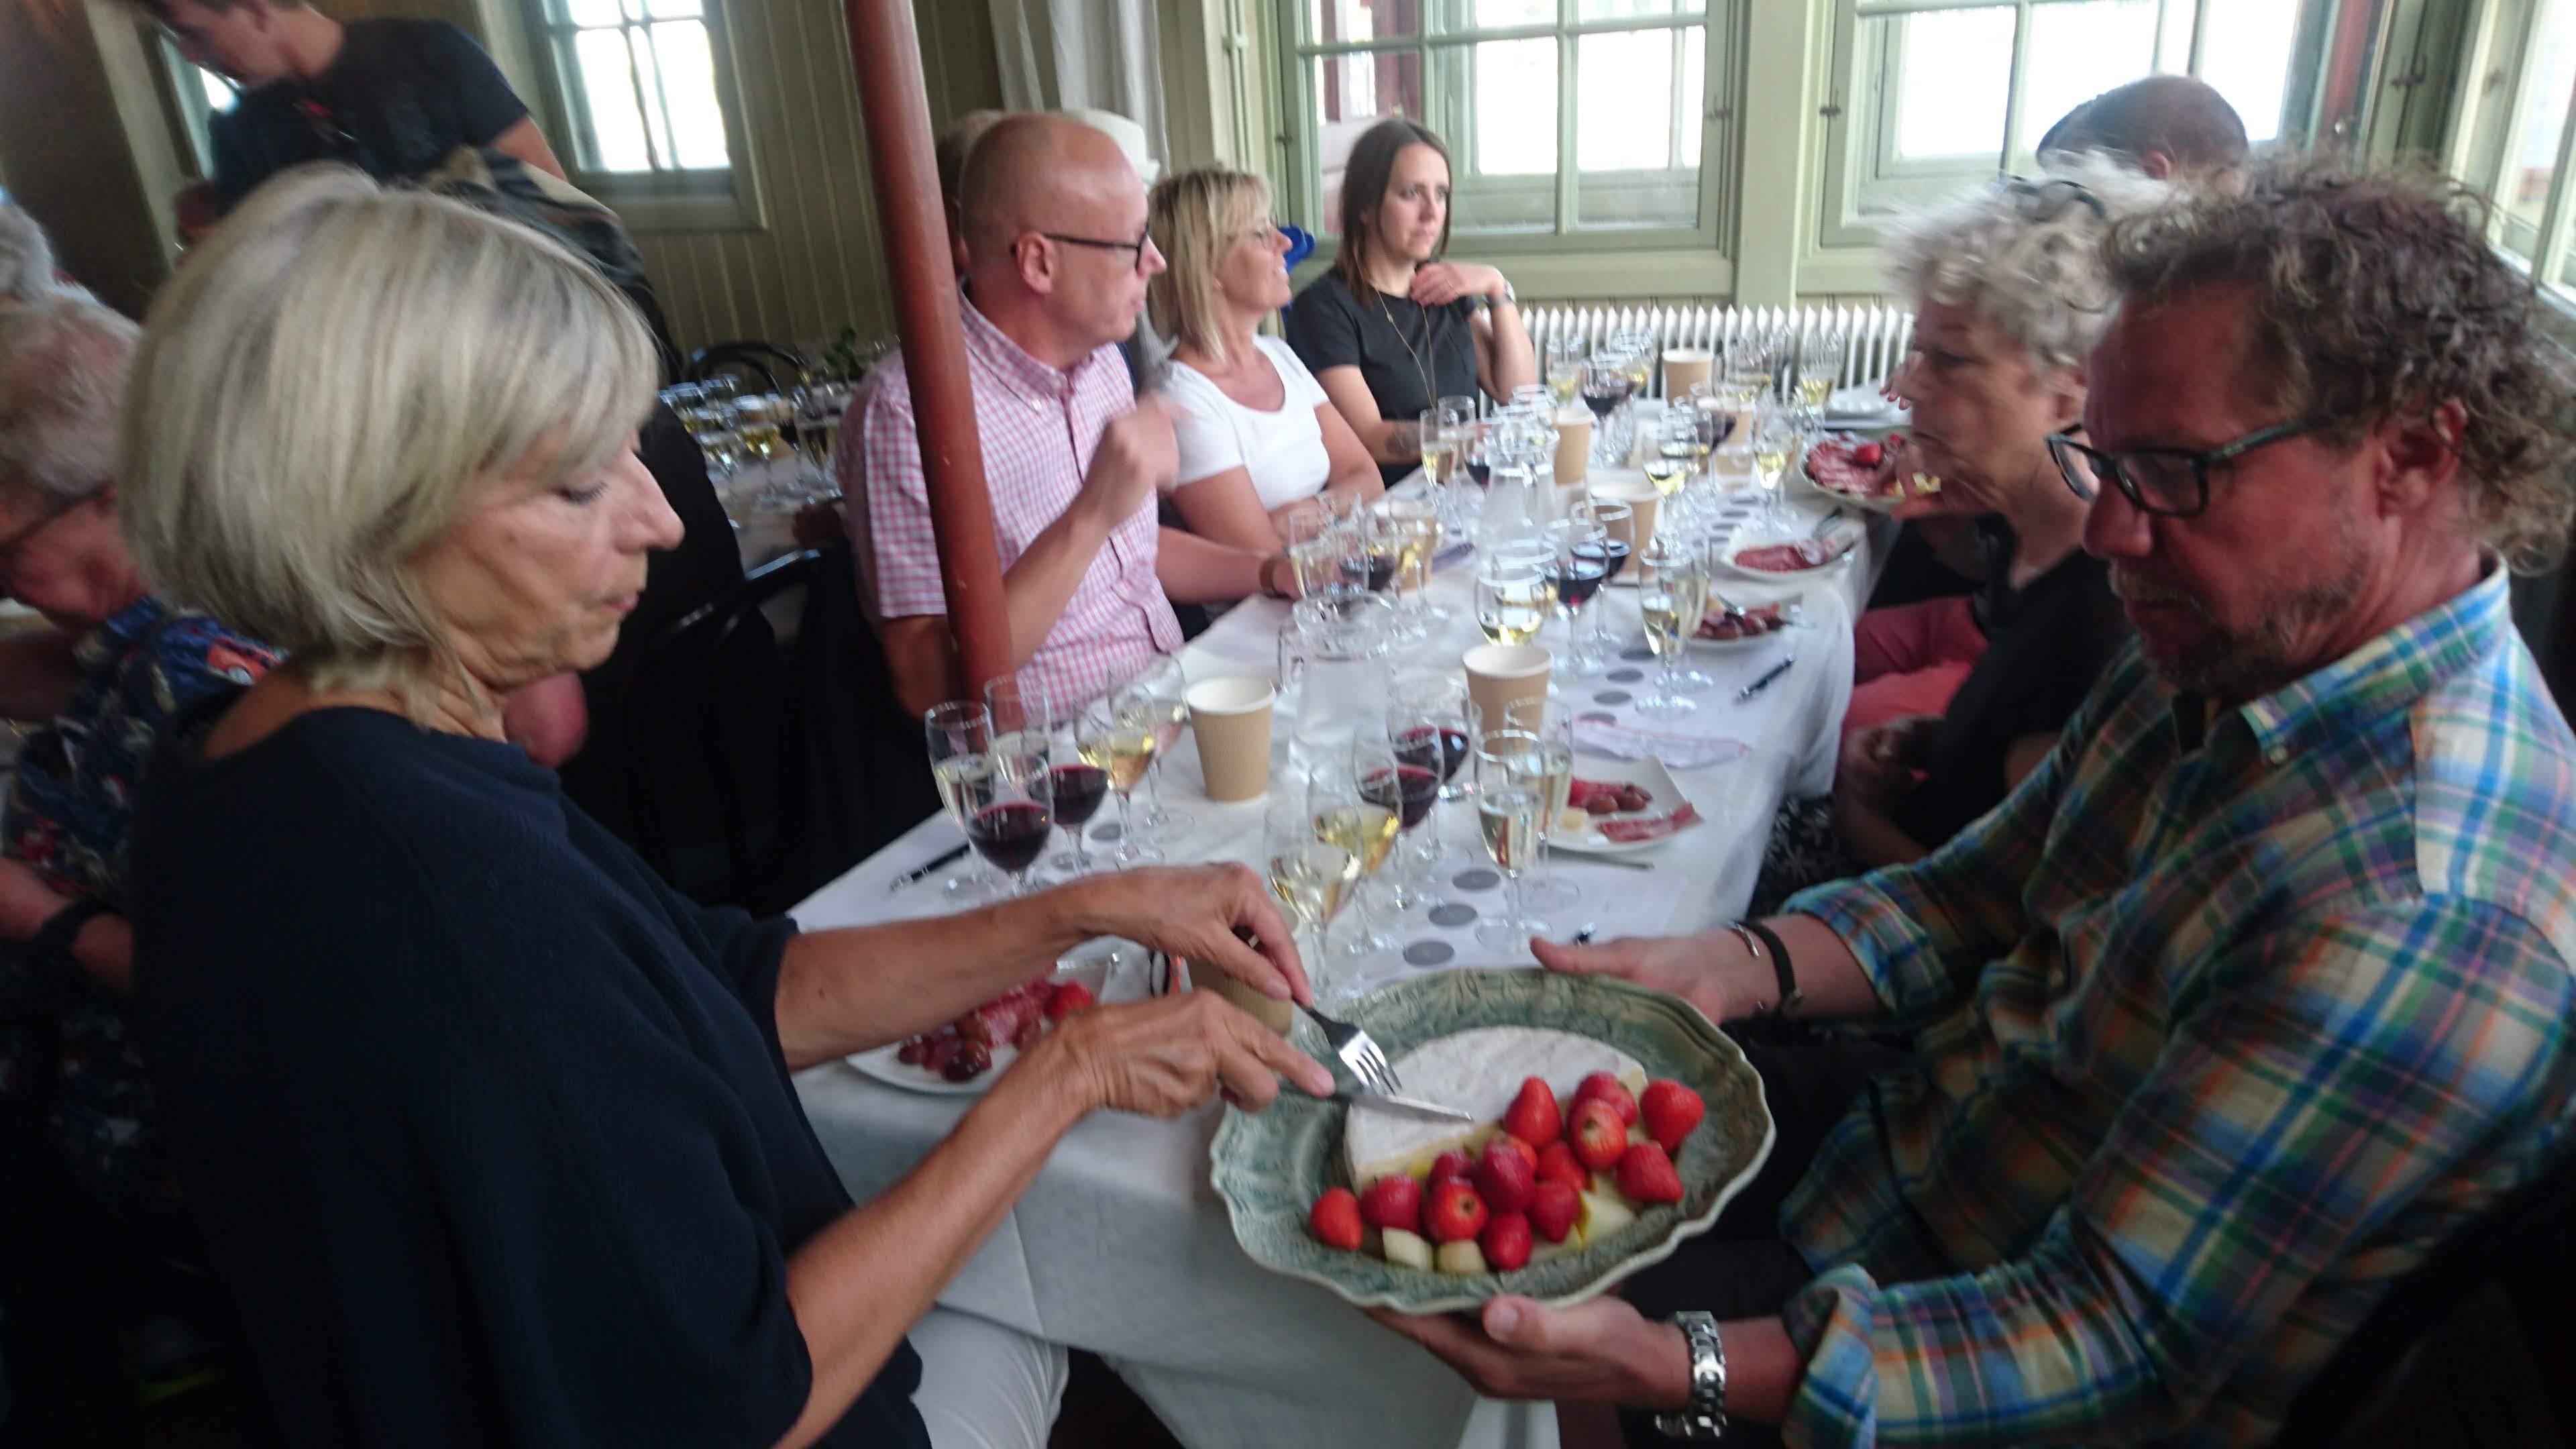 Glada festdeltagare vid festdukade bord. Vinprovning med våra gäster från Helgolands badeanstalt 